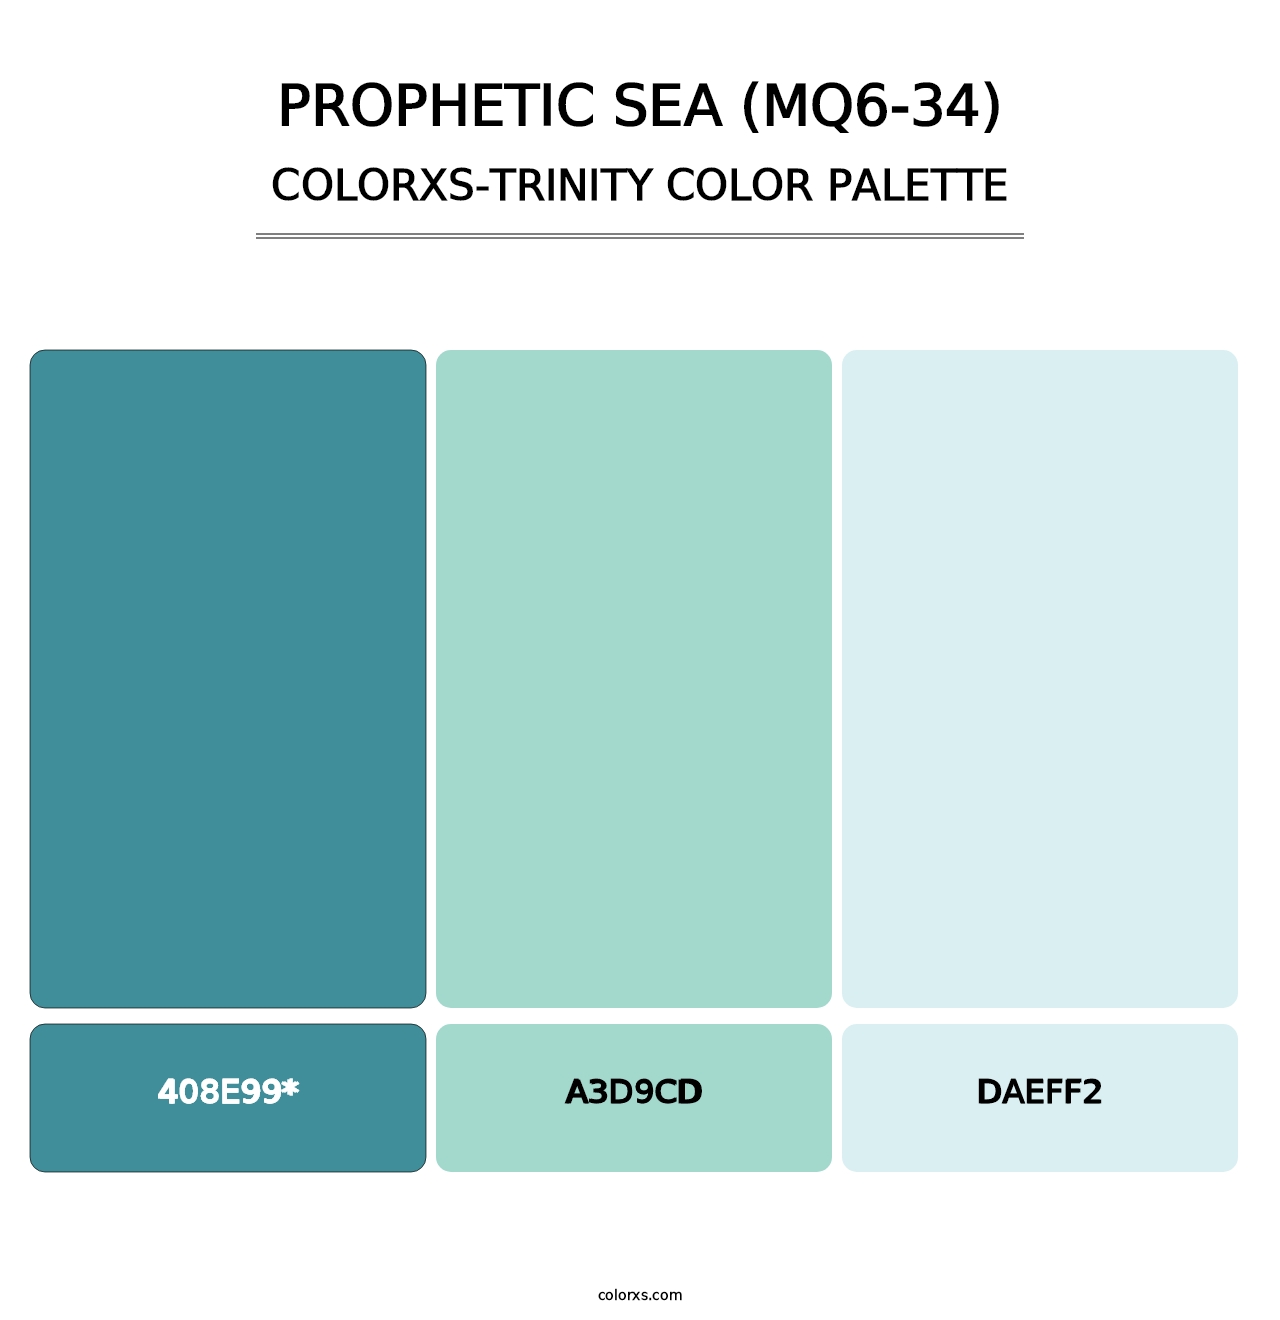 Prophetic Sea (MQ6-34) - Colorxs Trinity Palette